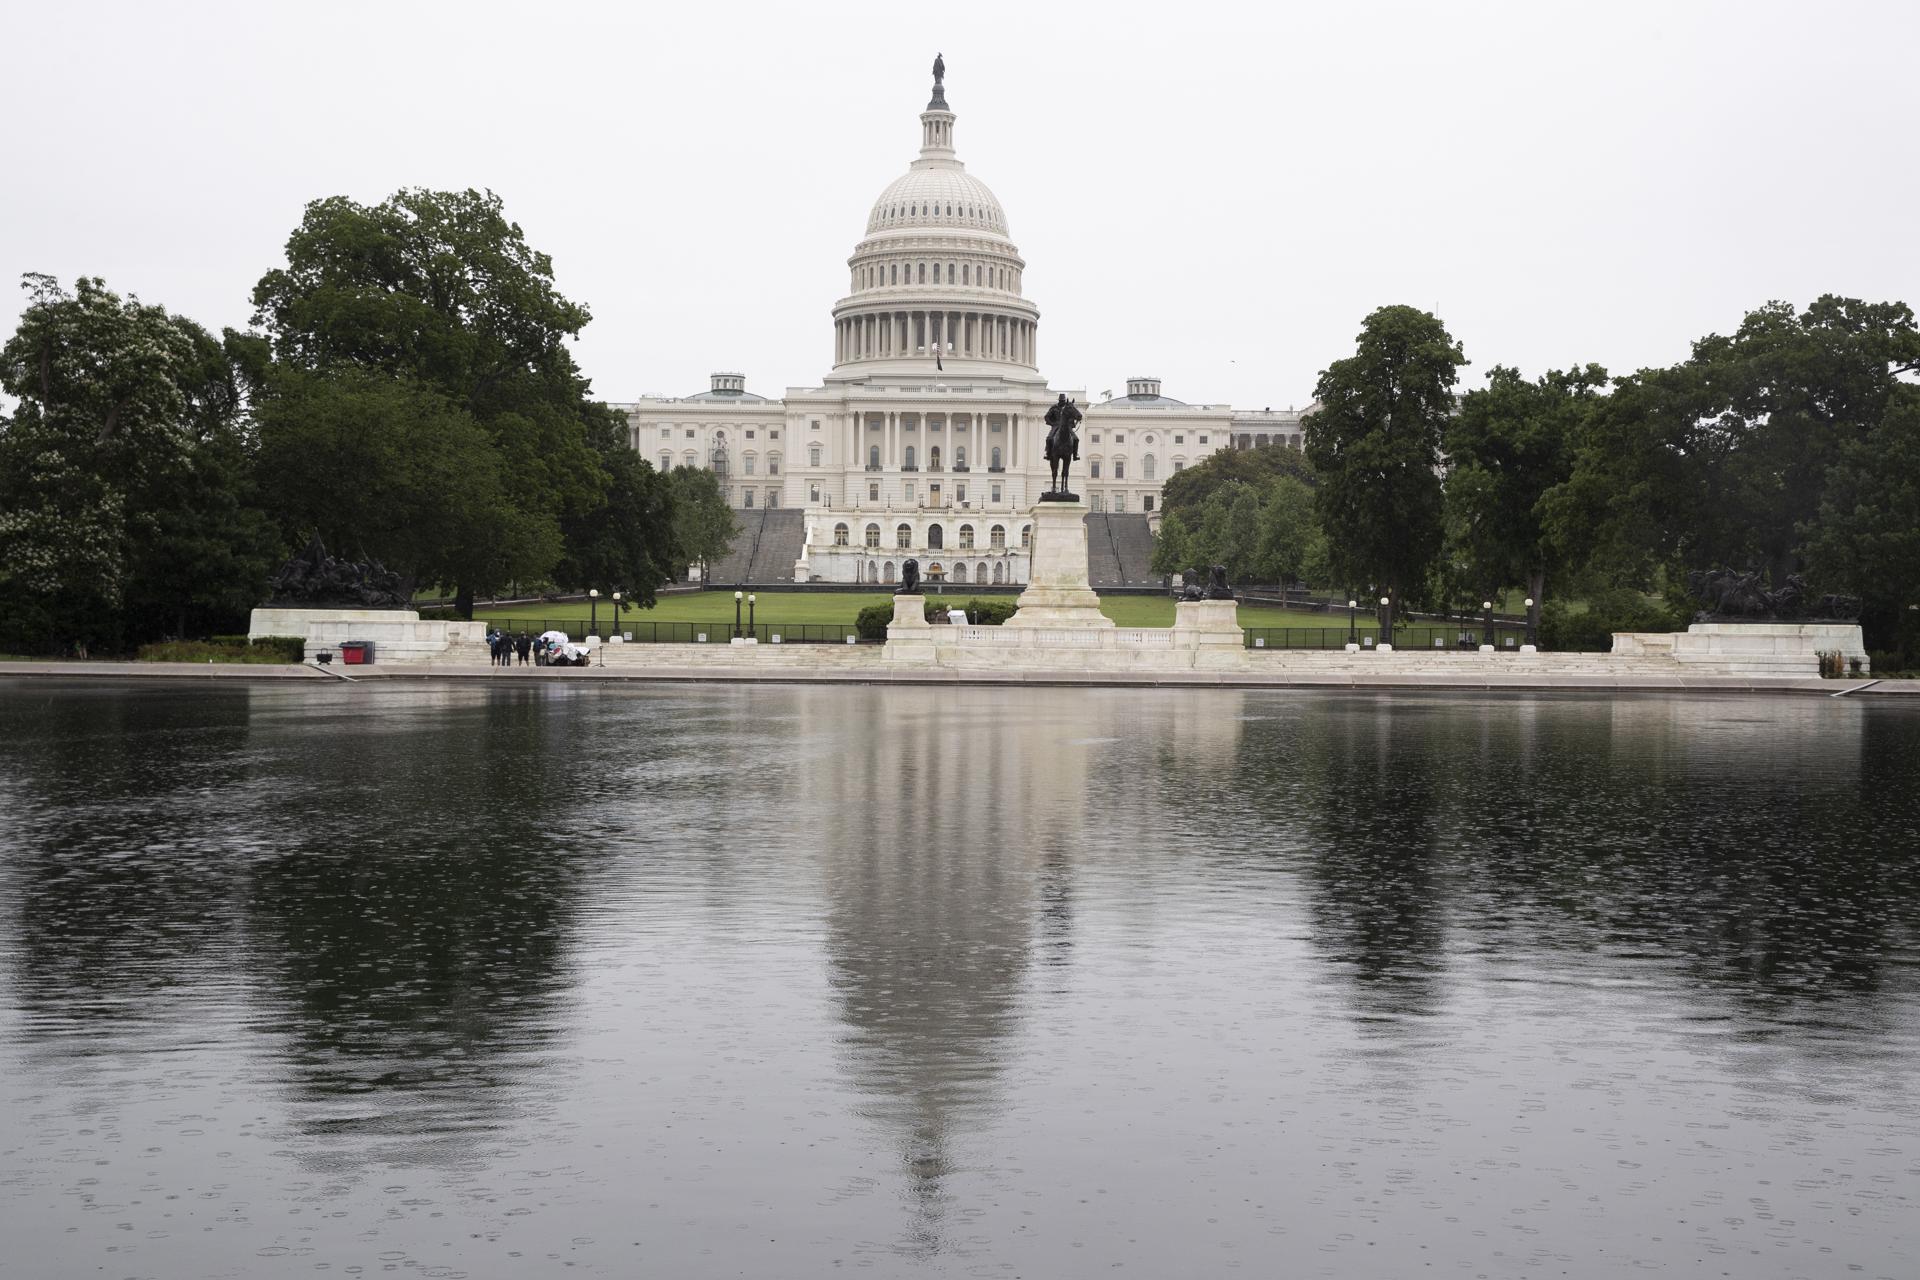 Vista exterior del Capitolio, sede del Congreso estadounidense, en una fotografía de archivo. EFE/Michael Reynolds